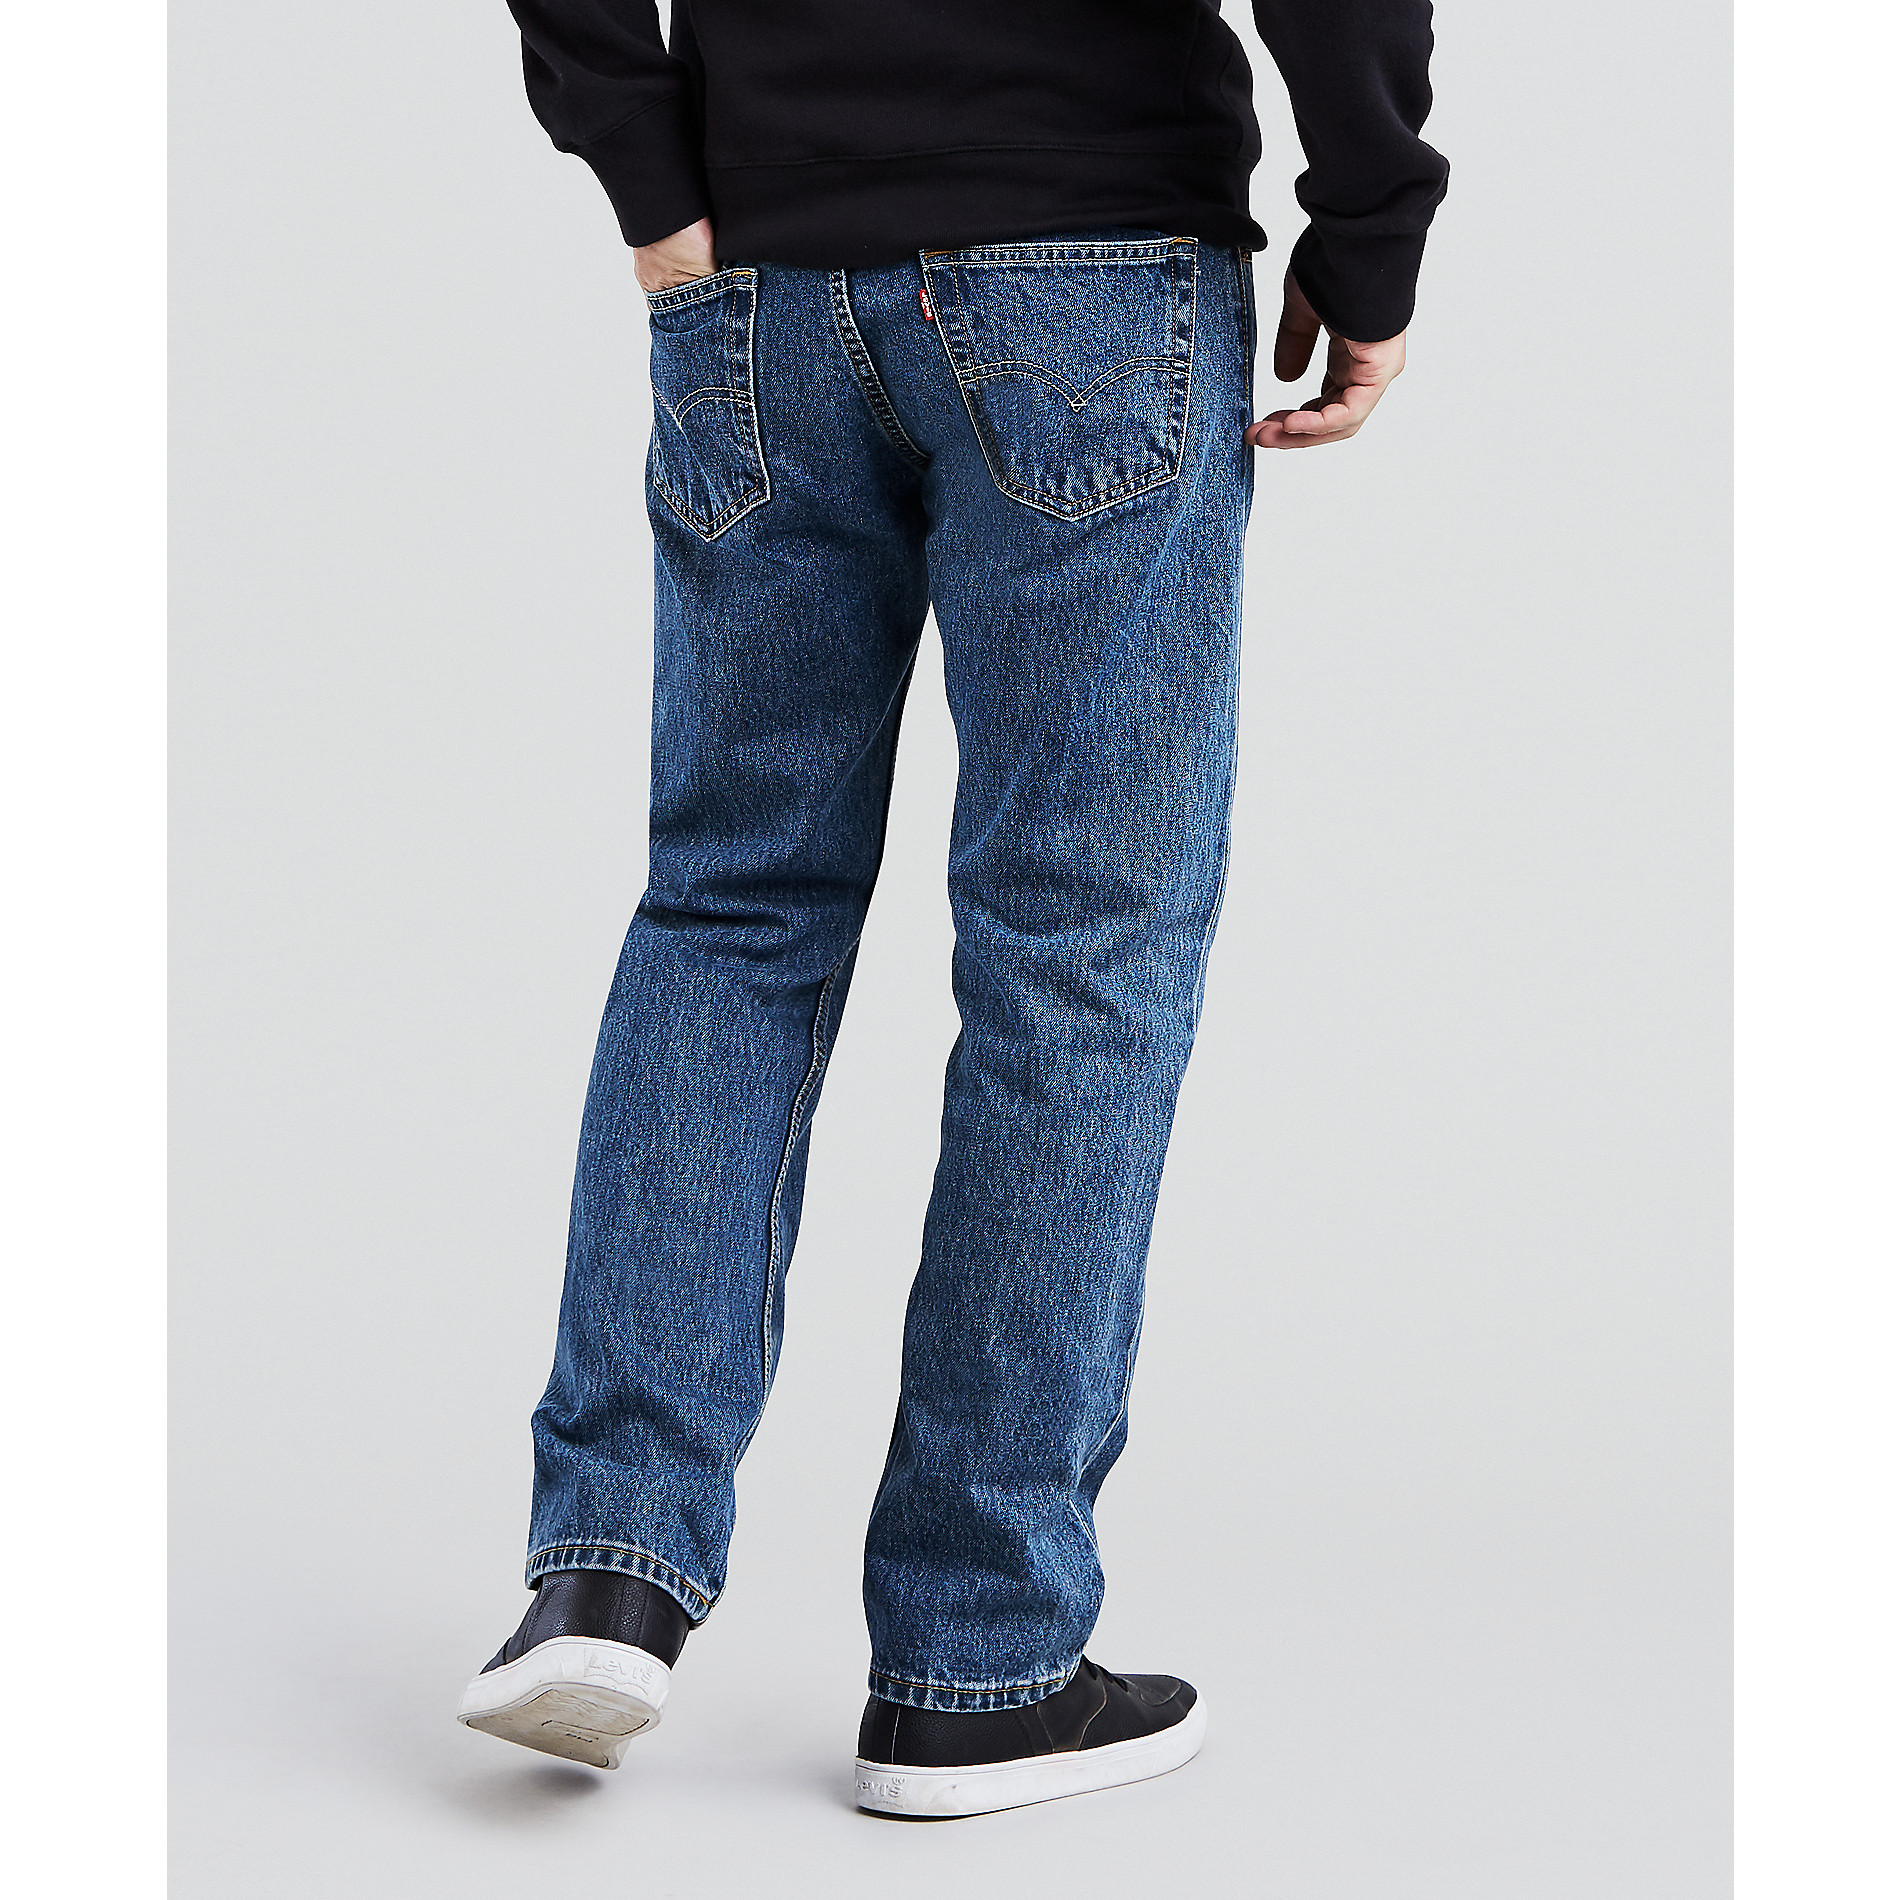 men's levis 505 jeans